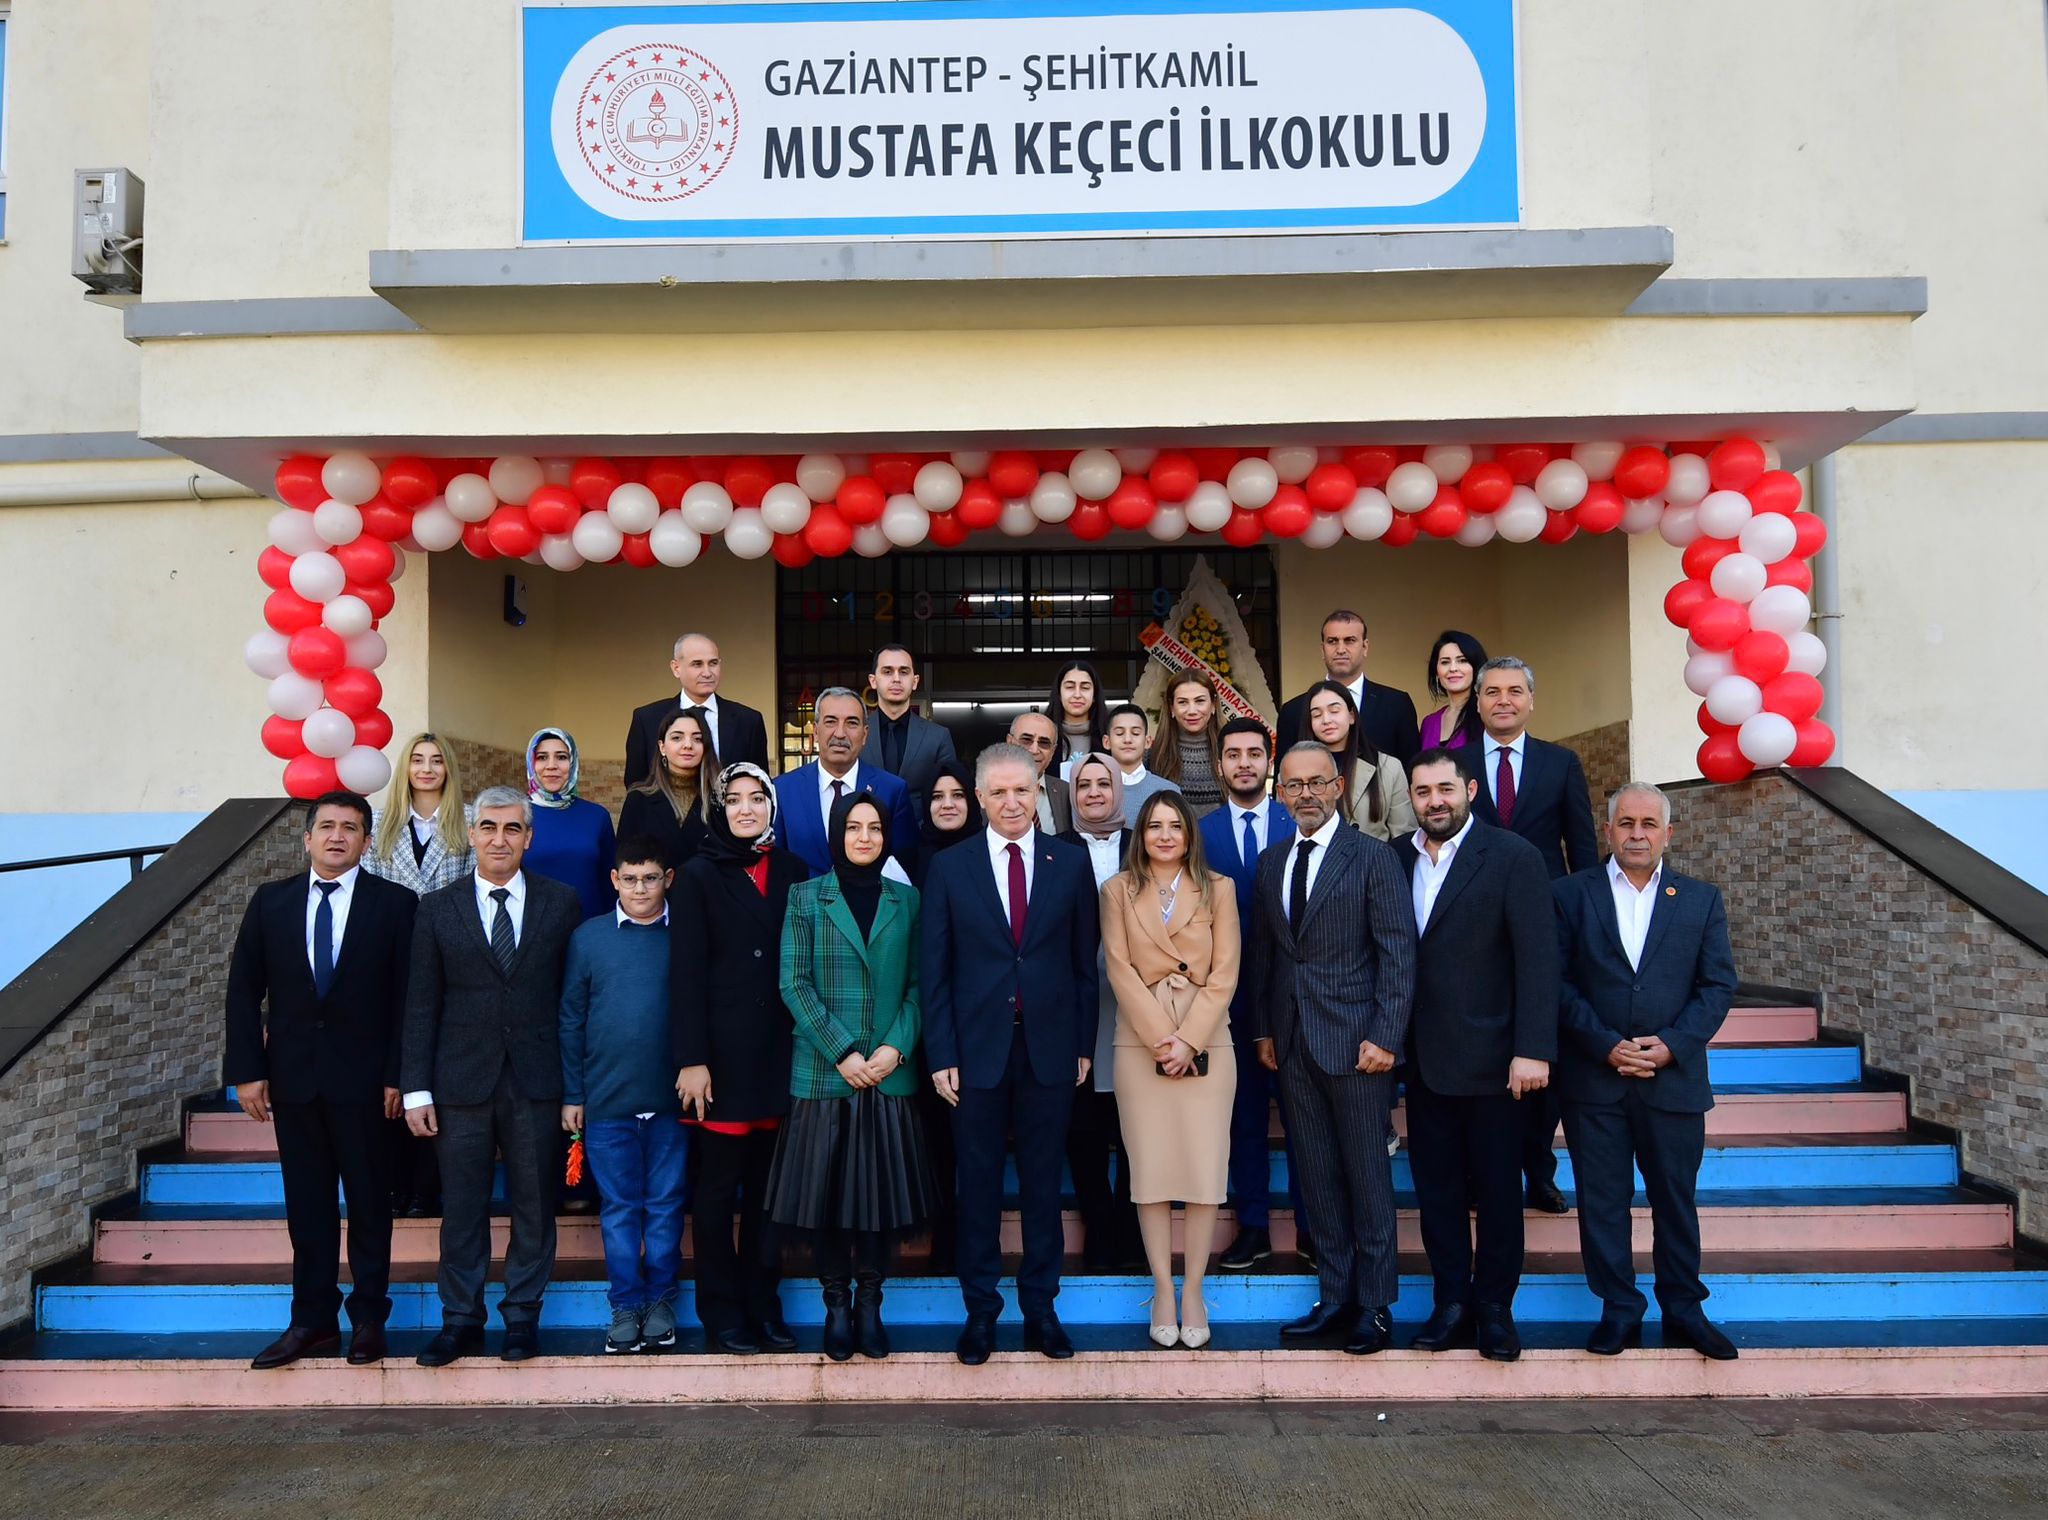 Mustafa Keçeci İlkokulu Açılış Töreni